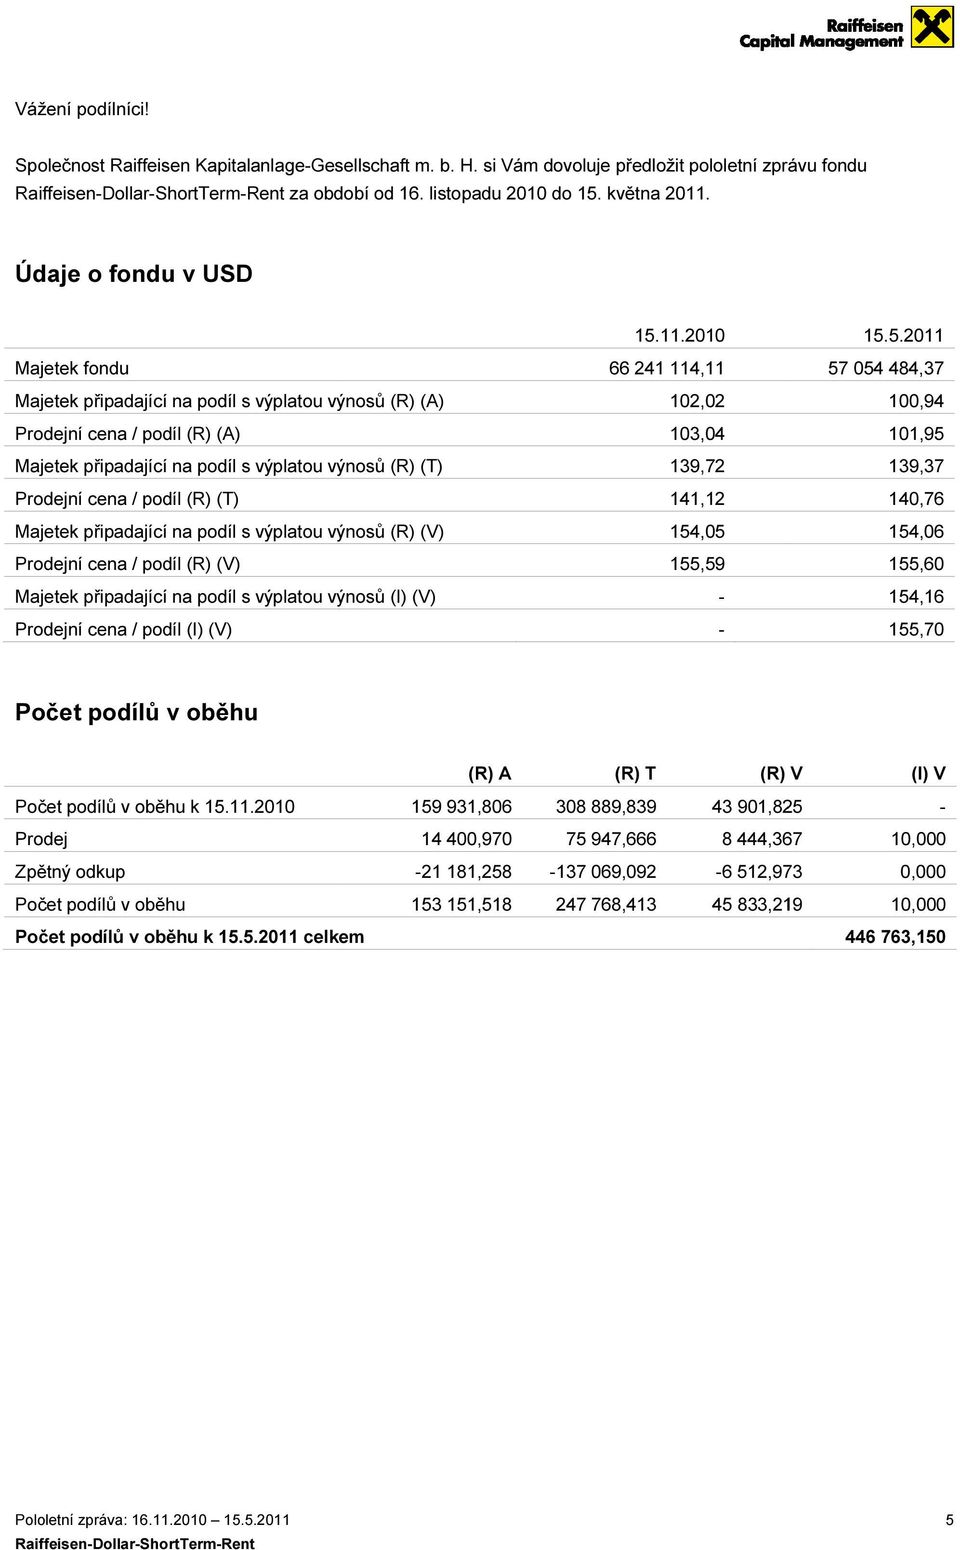 2010 Majetek fondu 66 241 114,11 Majetek připadající na podíl s výplatou výnosů (R) (A) 102,02 Prodejní cena / podíl (R) (A) 103,04 Majetek připadající na podíl s výplatou výnosů (R) (T) 139,72